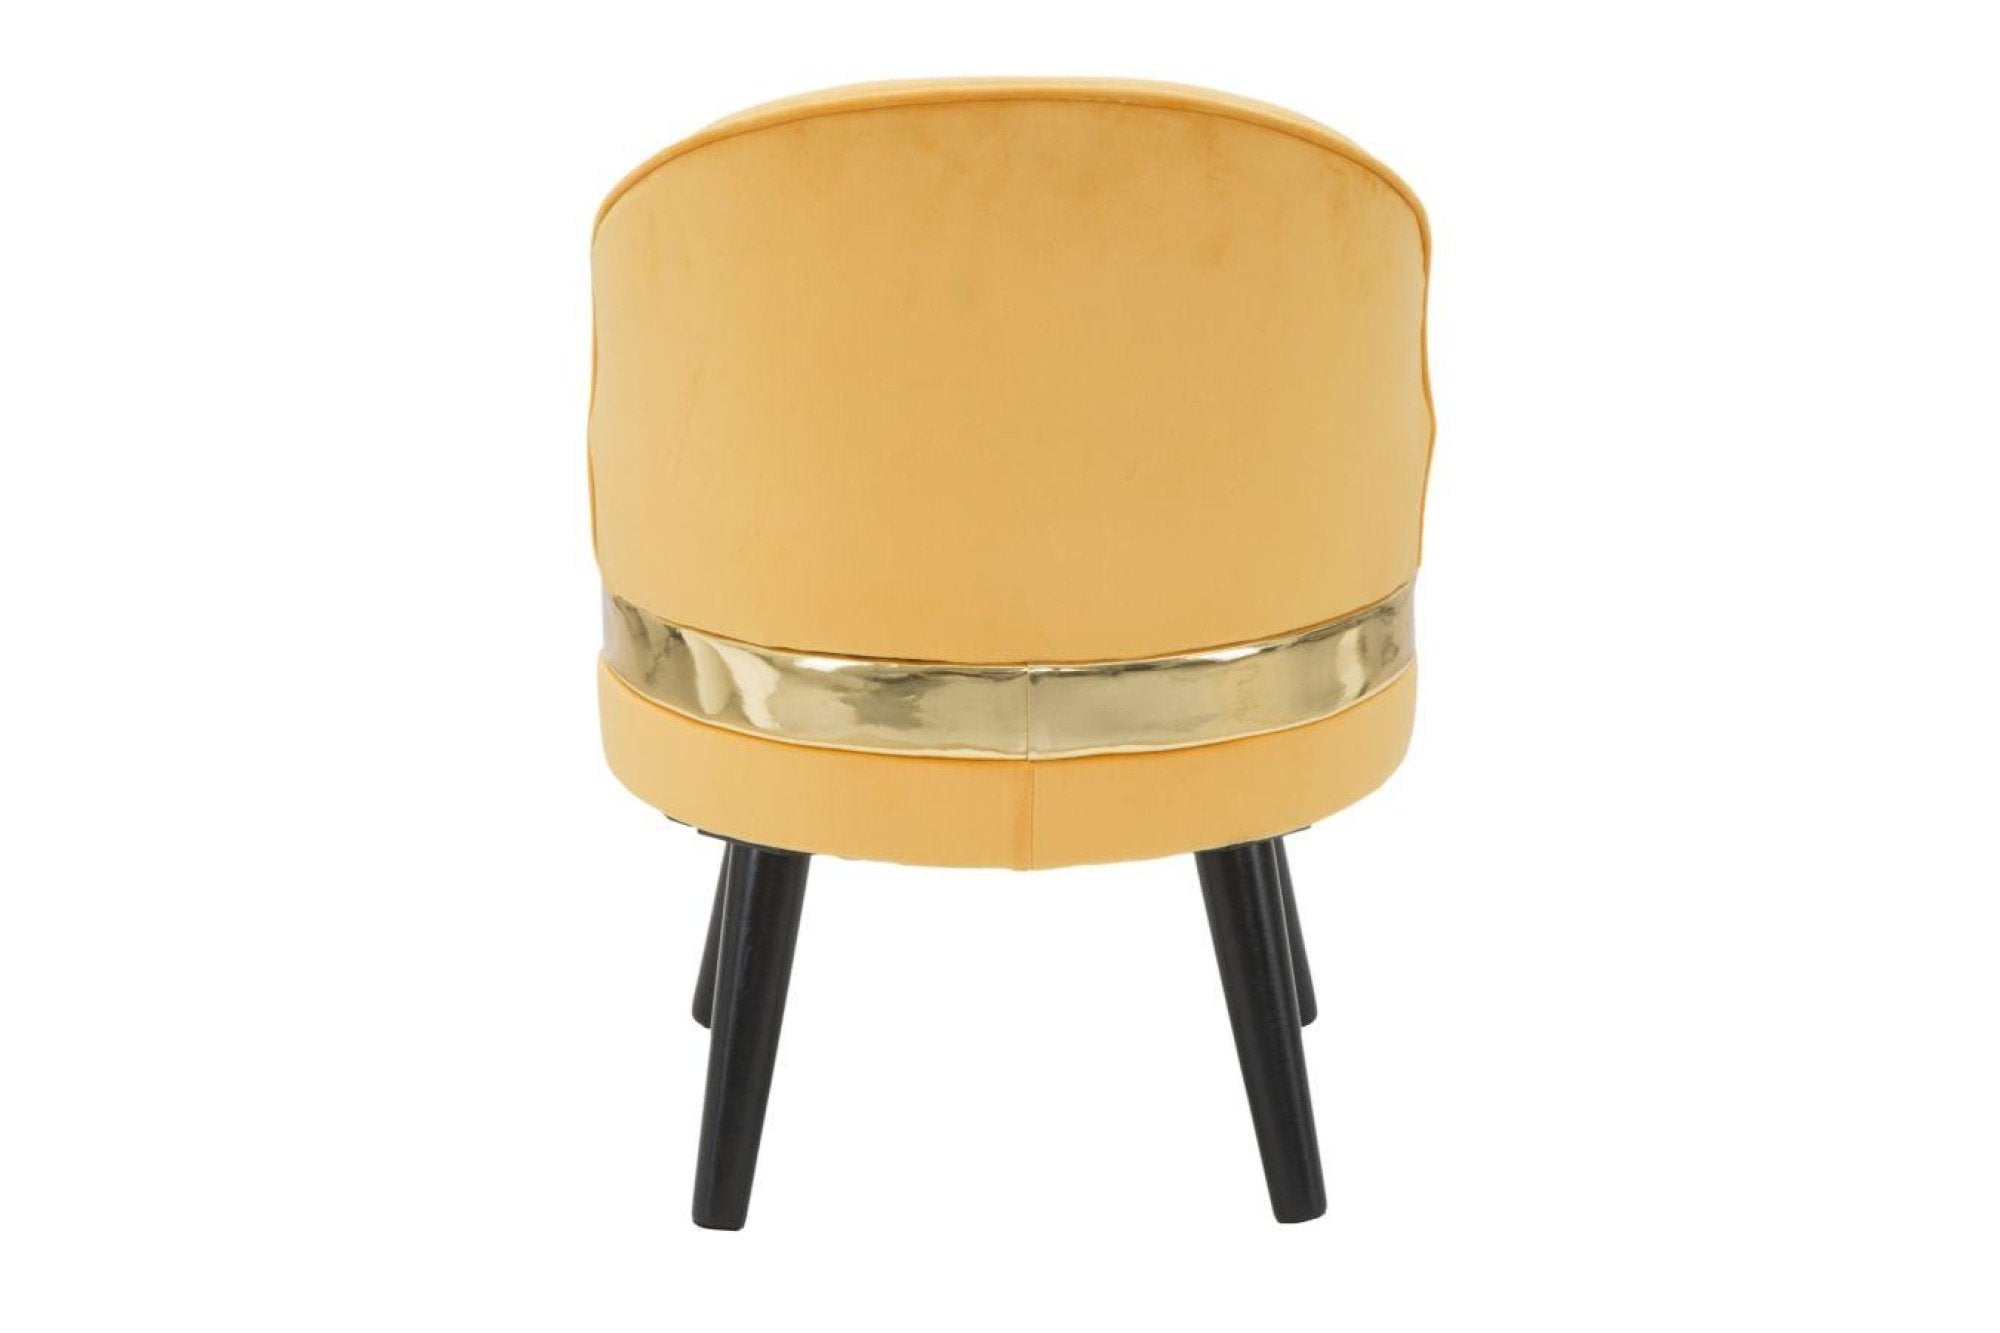 Mauro ferretti paris sárga és arany bársony szék